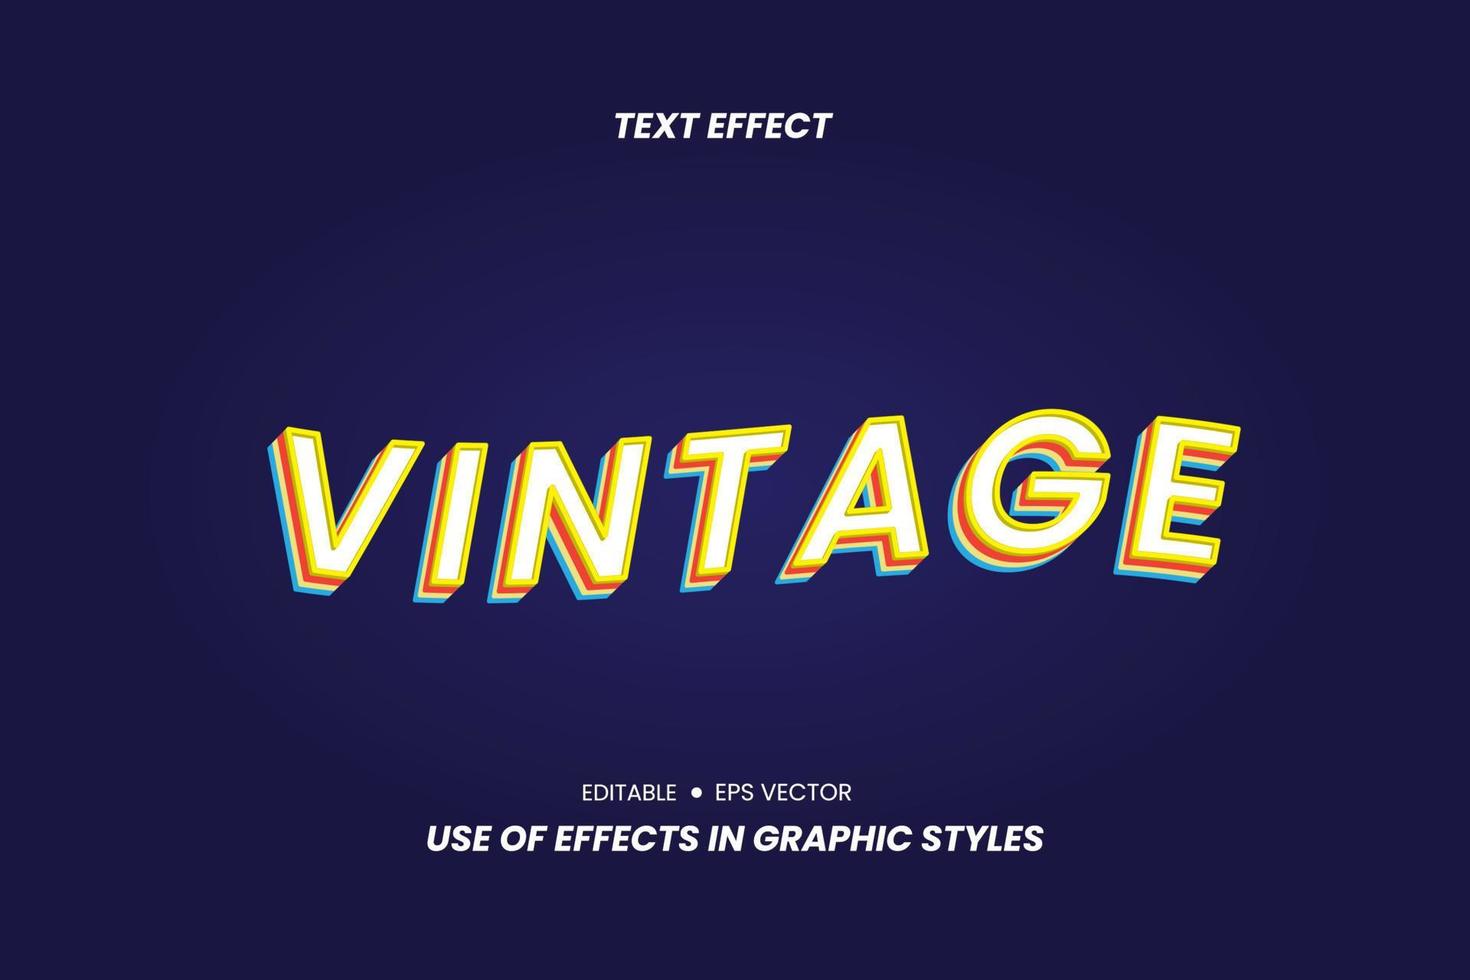 Vintage-Texteffekt mit 3D-Buchstaben vektor